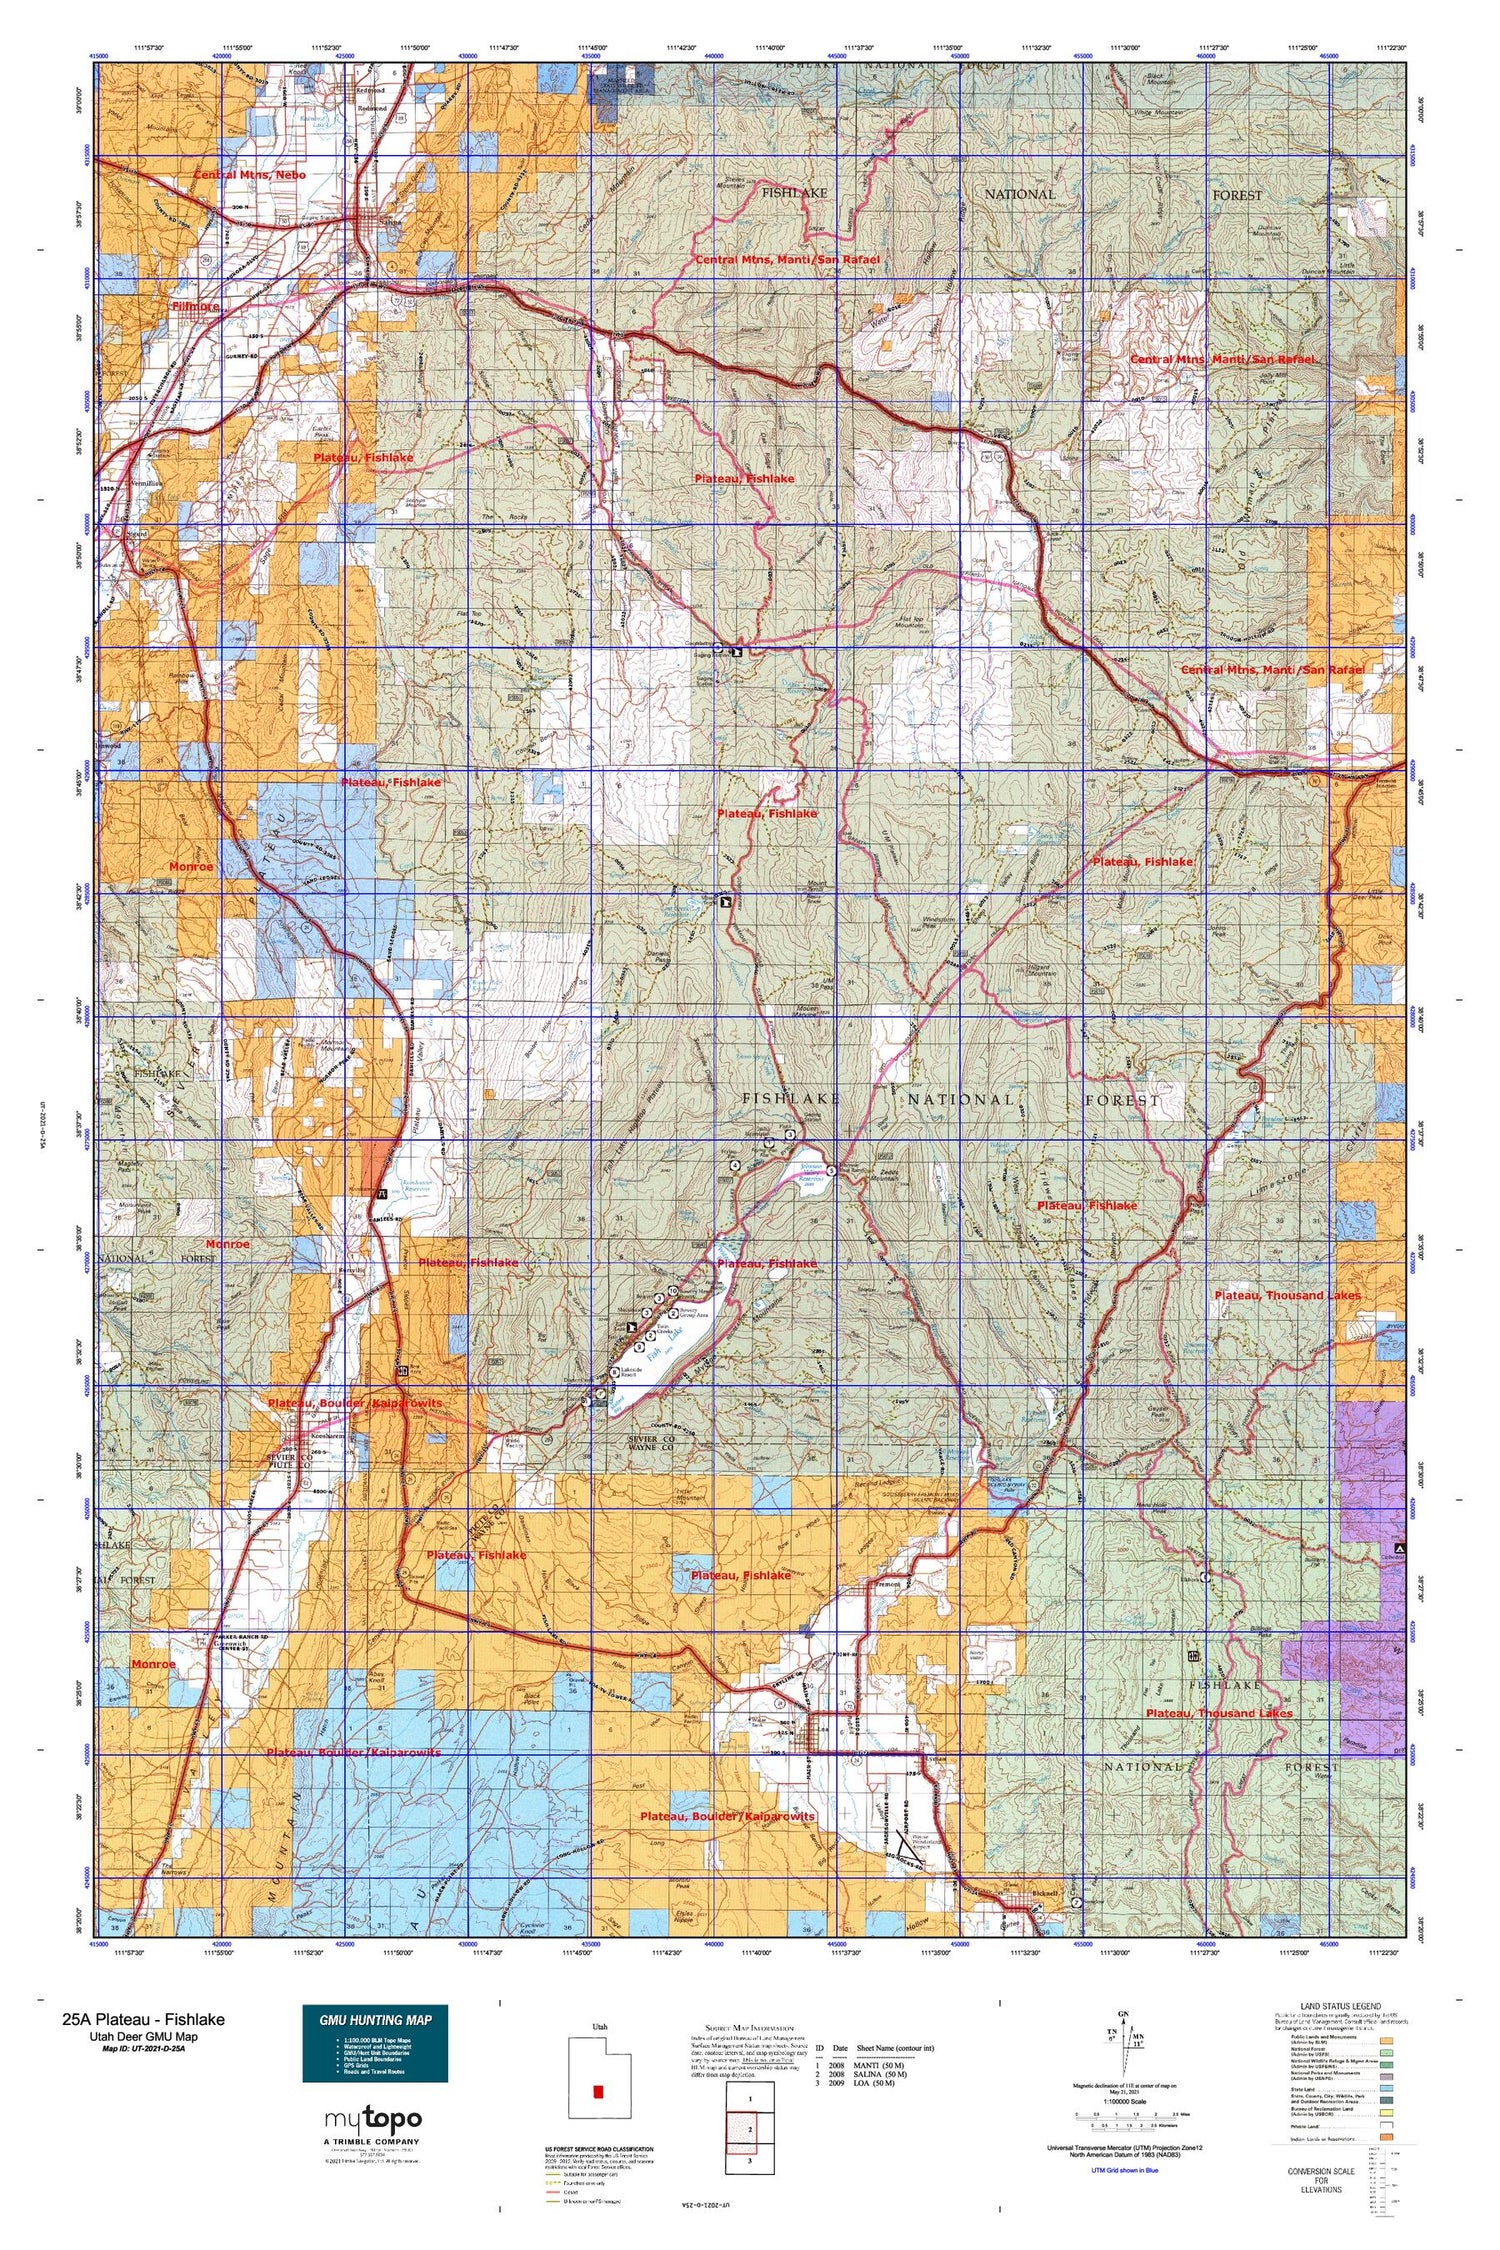 Utah Deer GMU 25A Plateau - Fishlake Map Image